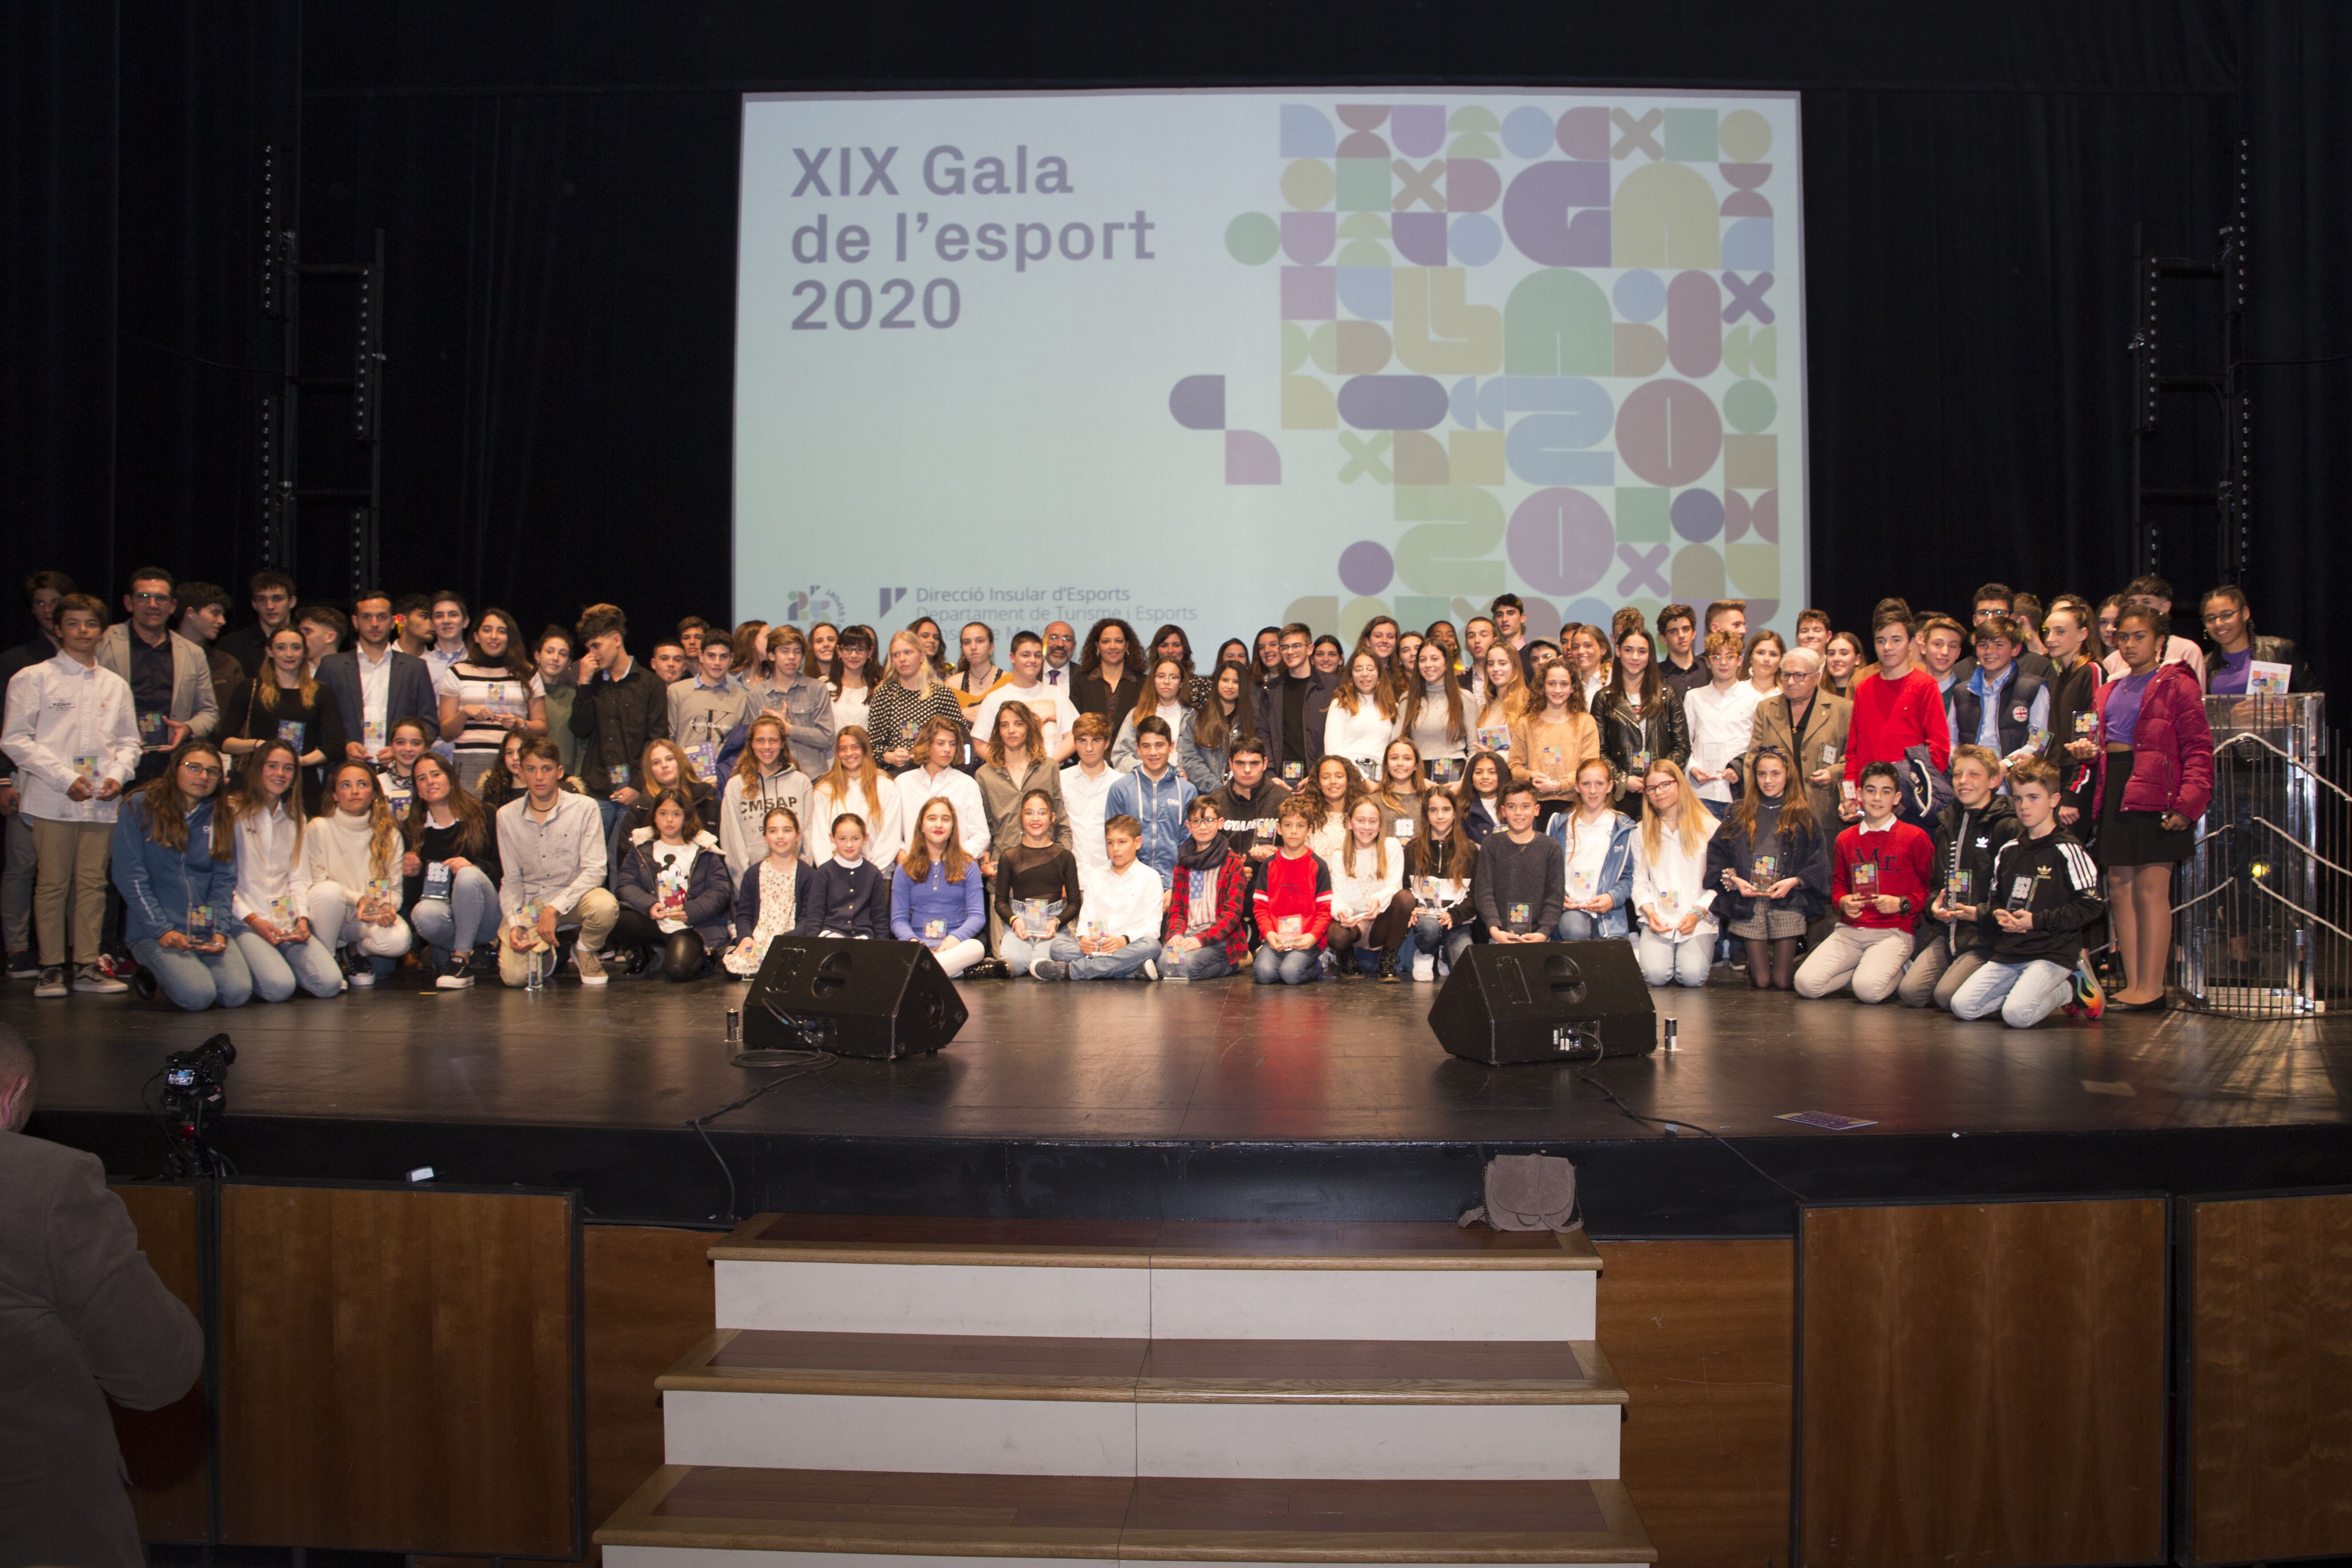 La XIX Gala de l’Esport del Consell reconeix el podi de més de cent vint joves esportistes mallorquins davant gairebé mil espectadors.